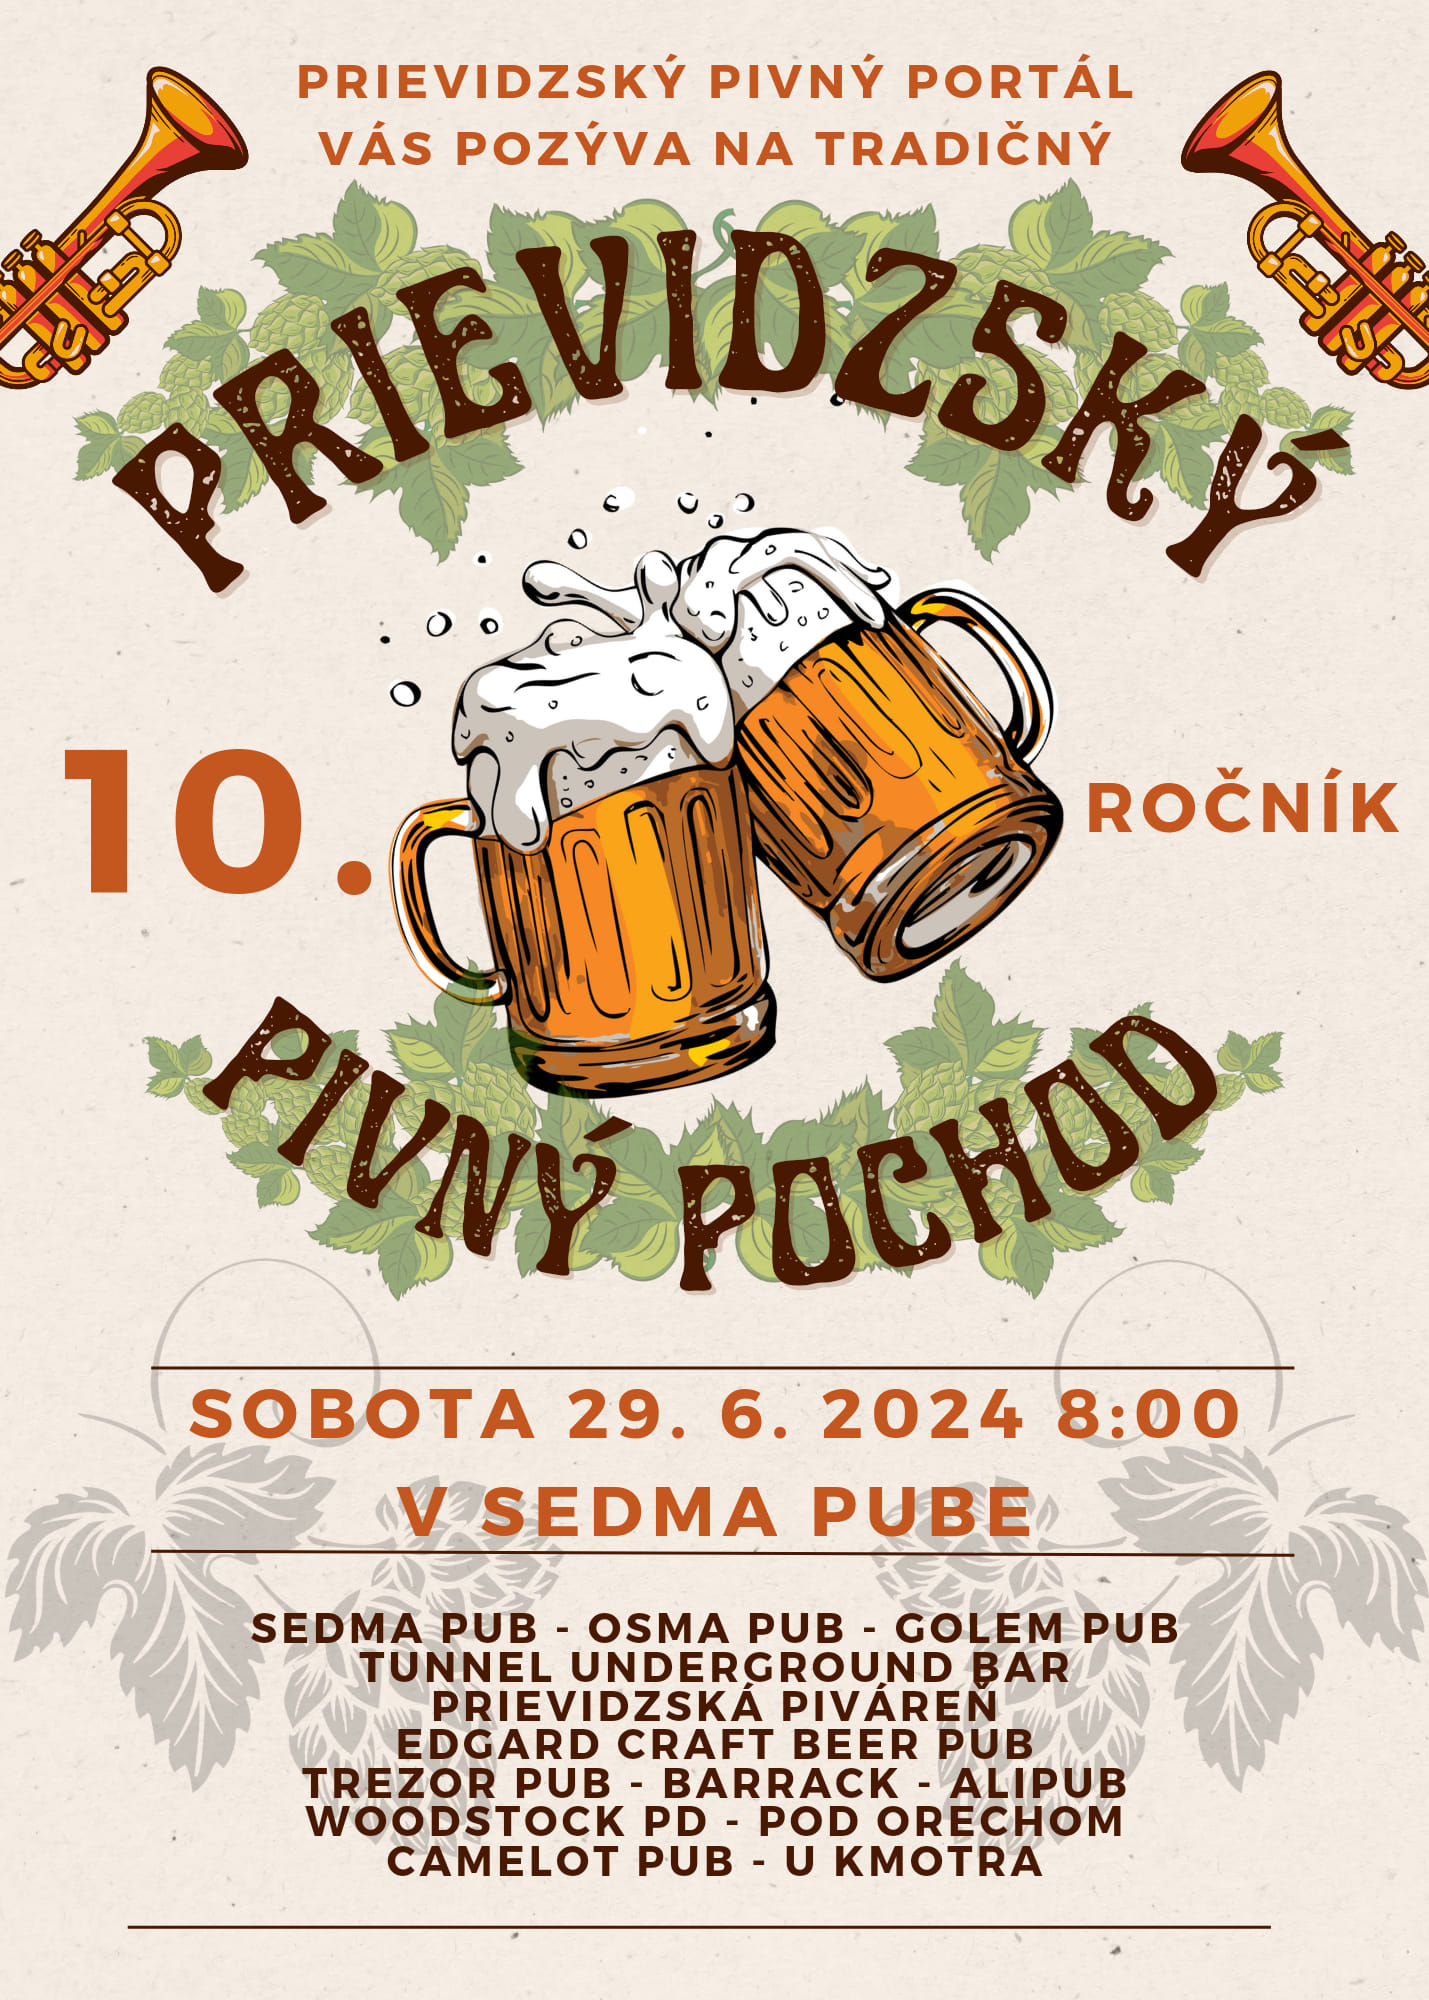 Prievidzsk pivn pochod 2024 Prievidza - 10. ronk